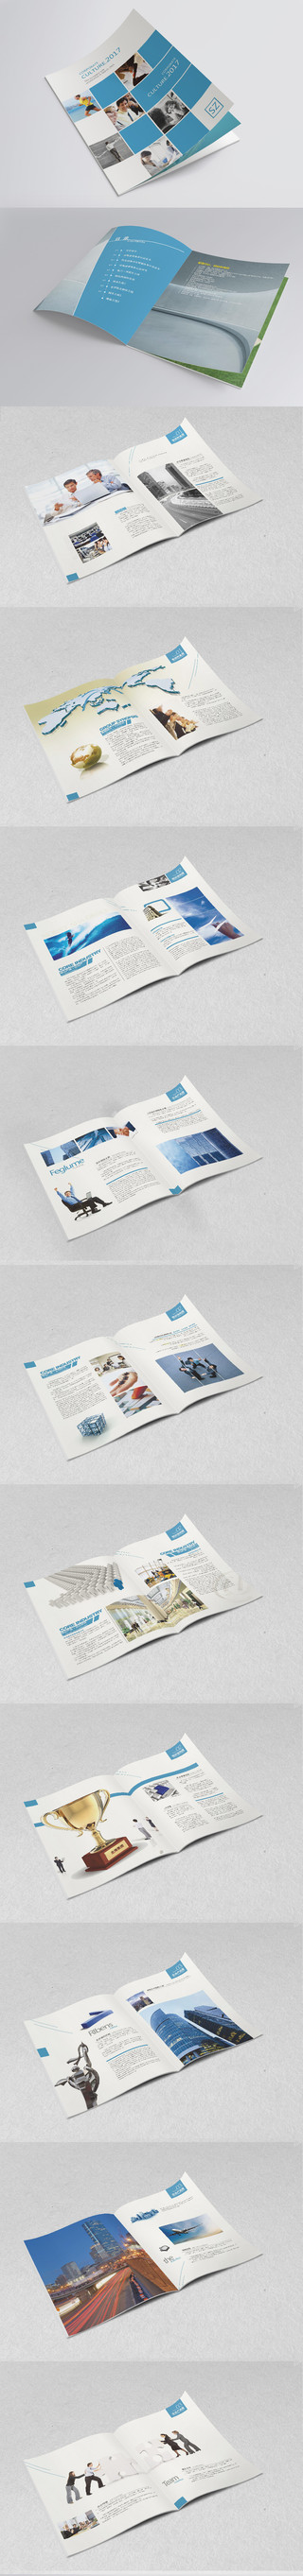 公司介绍公司宣传企业宣传集团宣传册画册设计